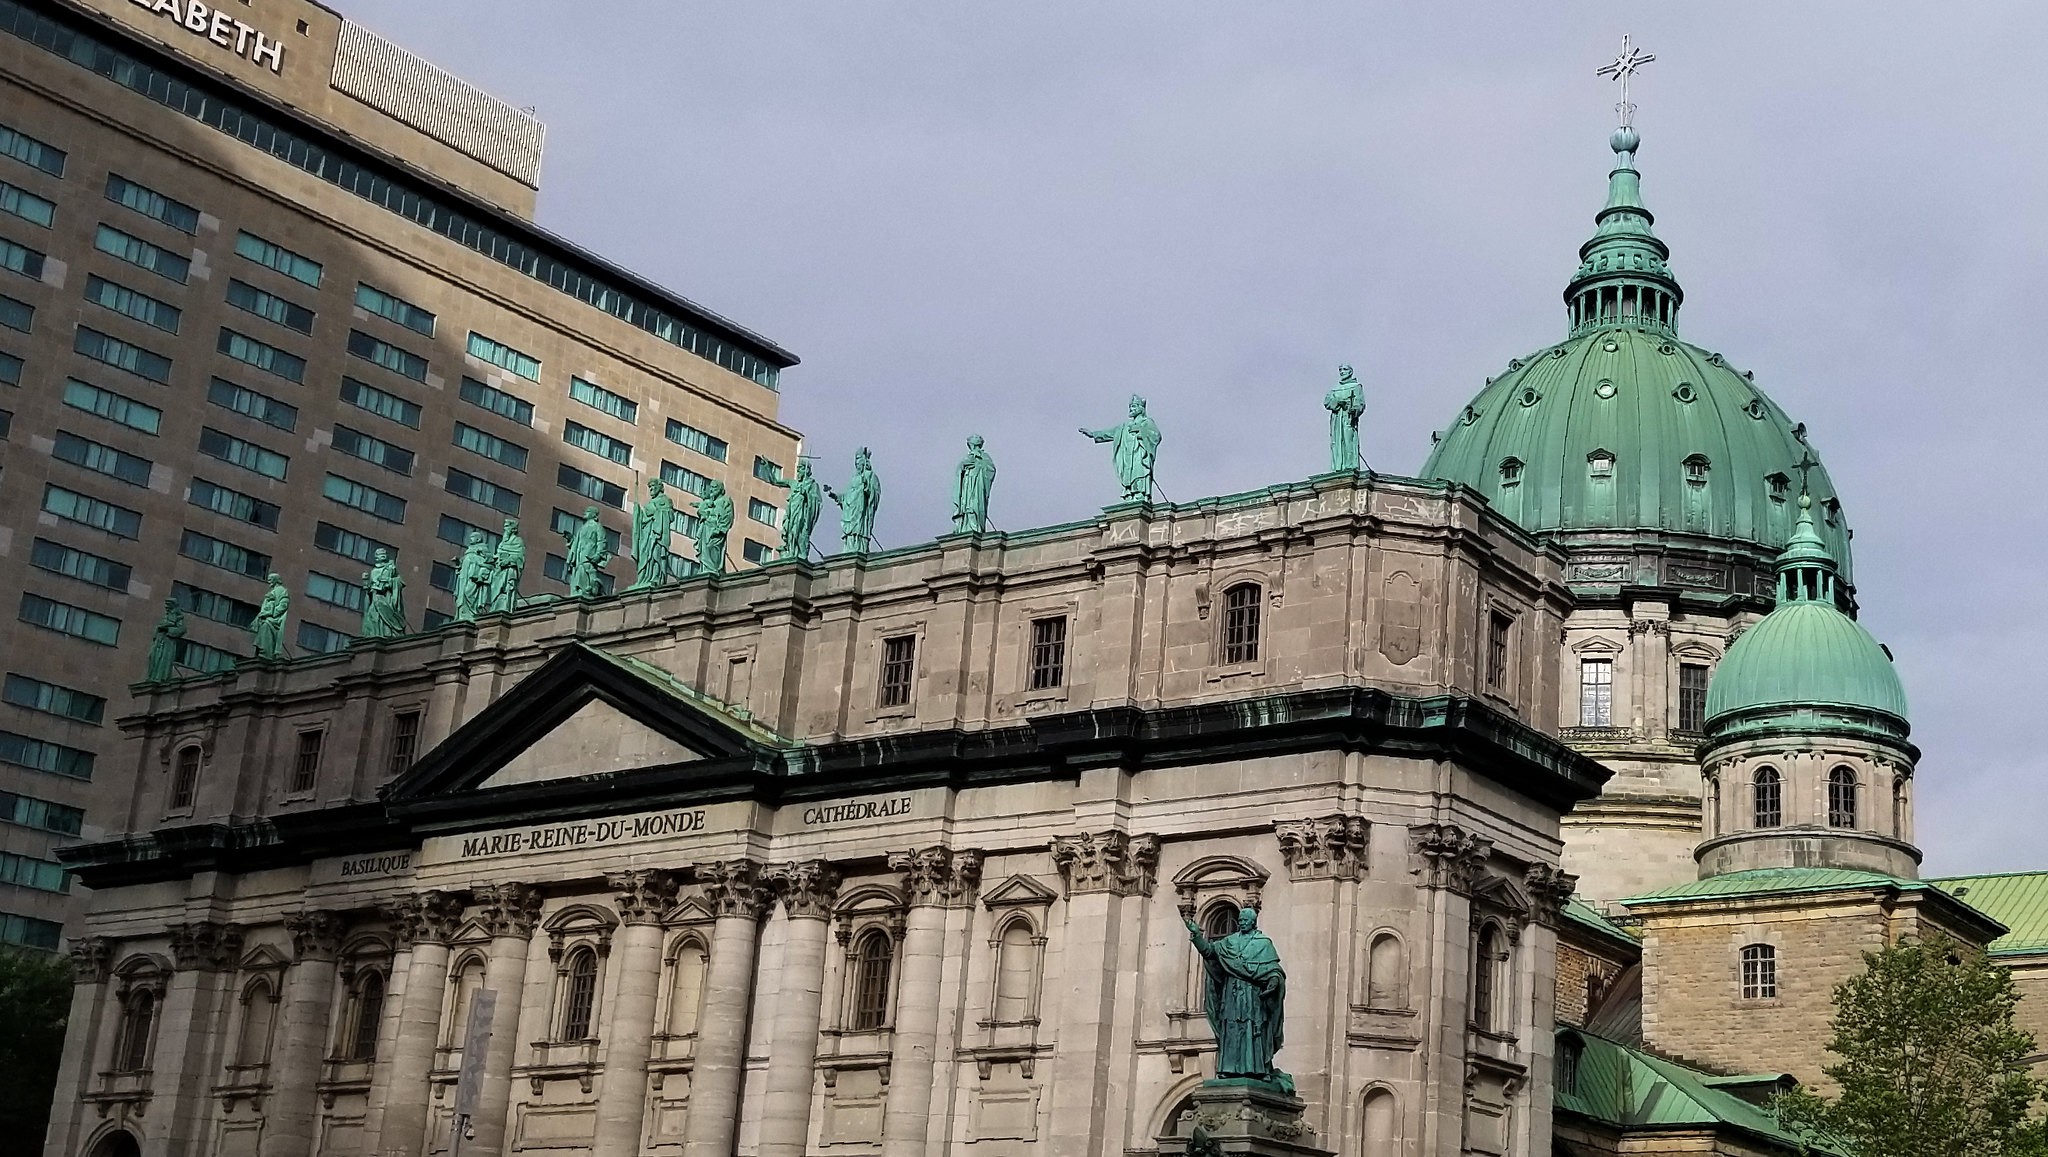 The Cathédrale Marie-Reine-du-Monde in Montreal.